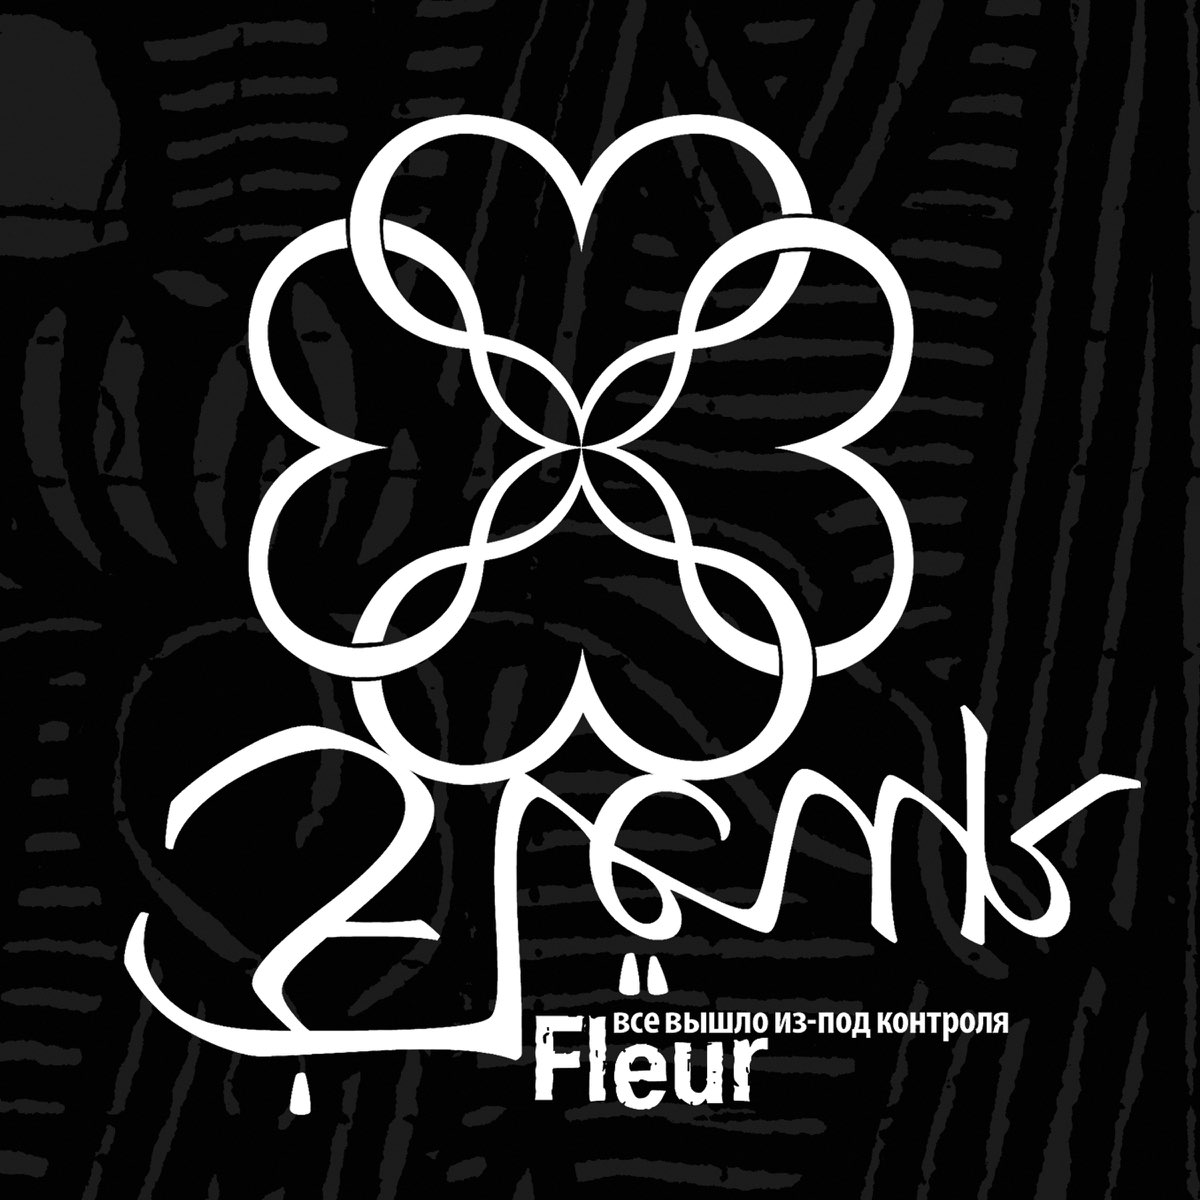 Флер музыка. Группа flëur. Флер группа обложка. Fleur обложки альбомов. Fleur все вышло из под контроля альбом.